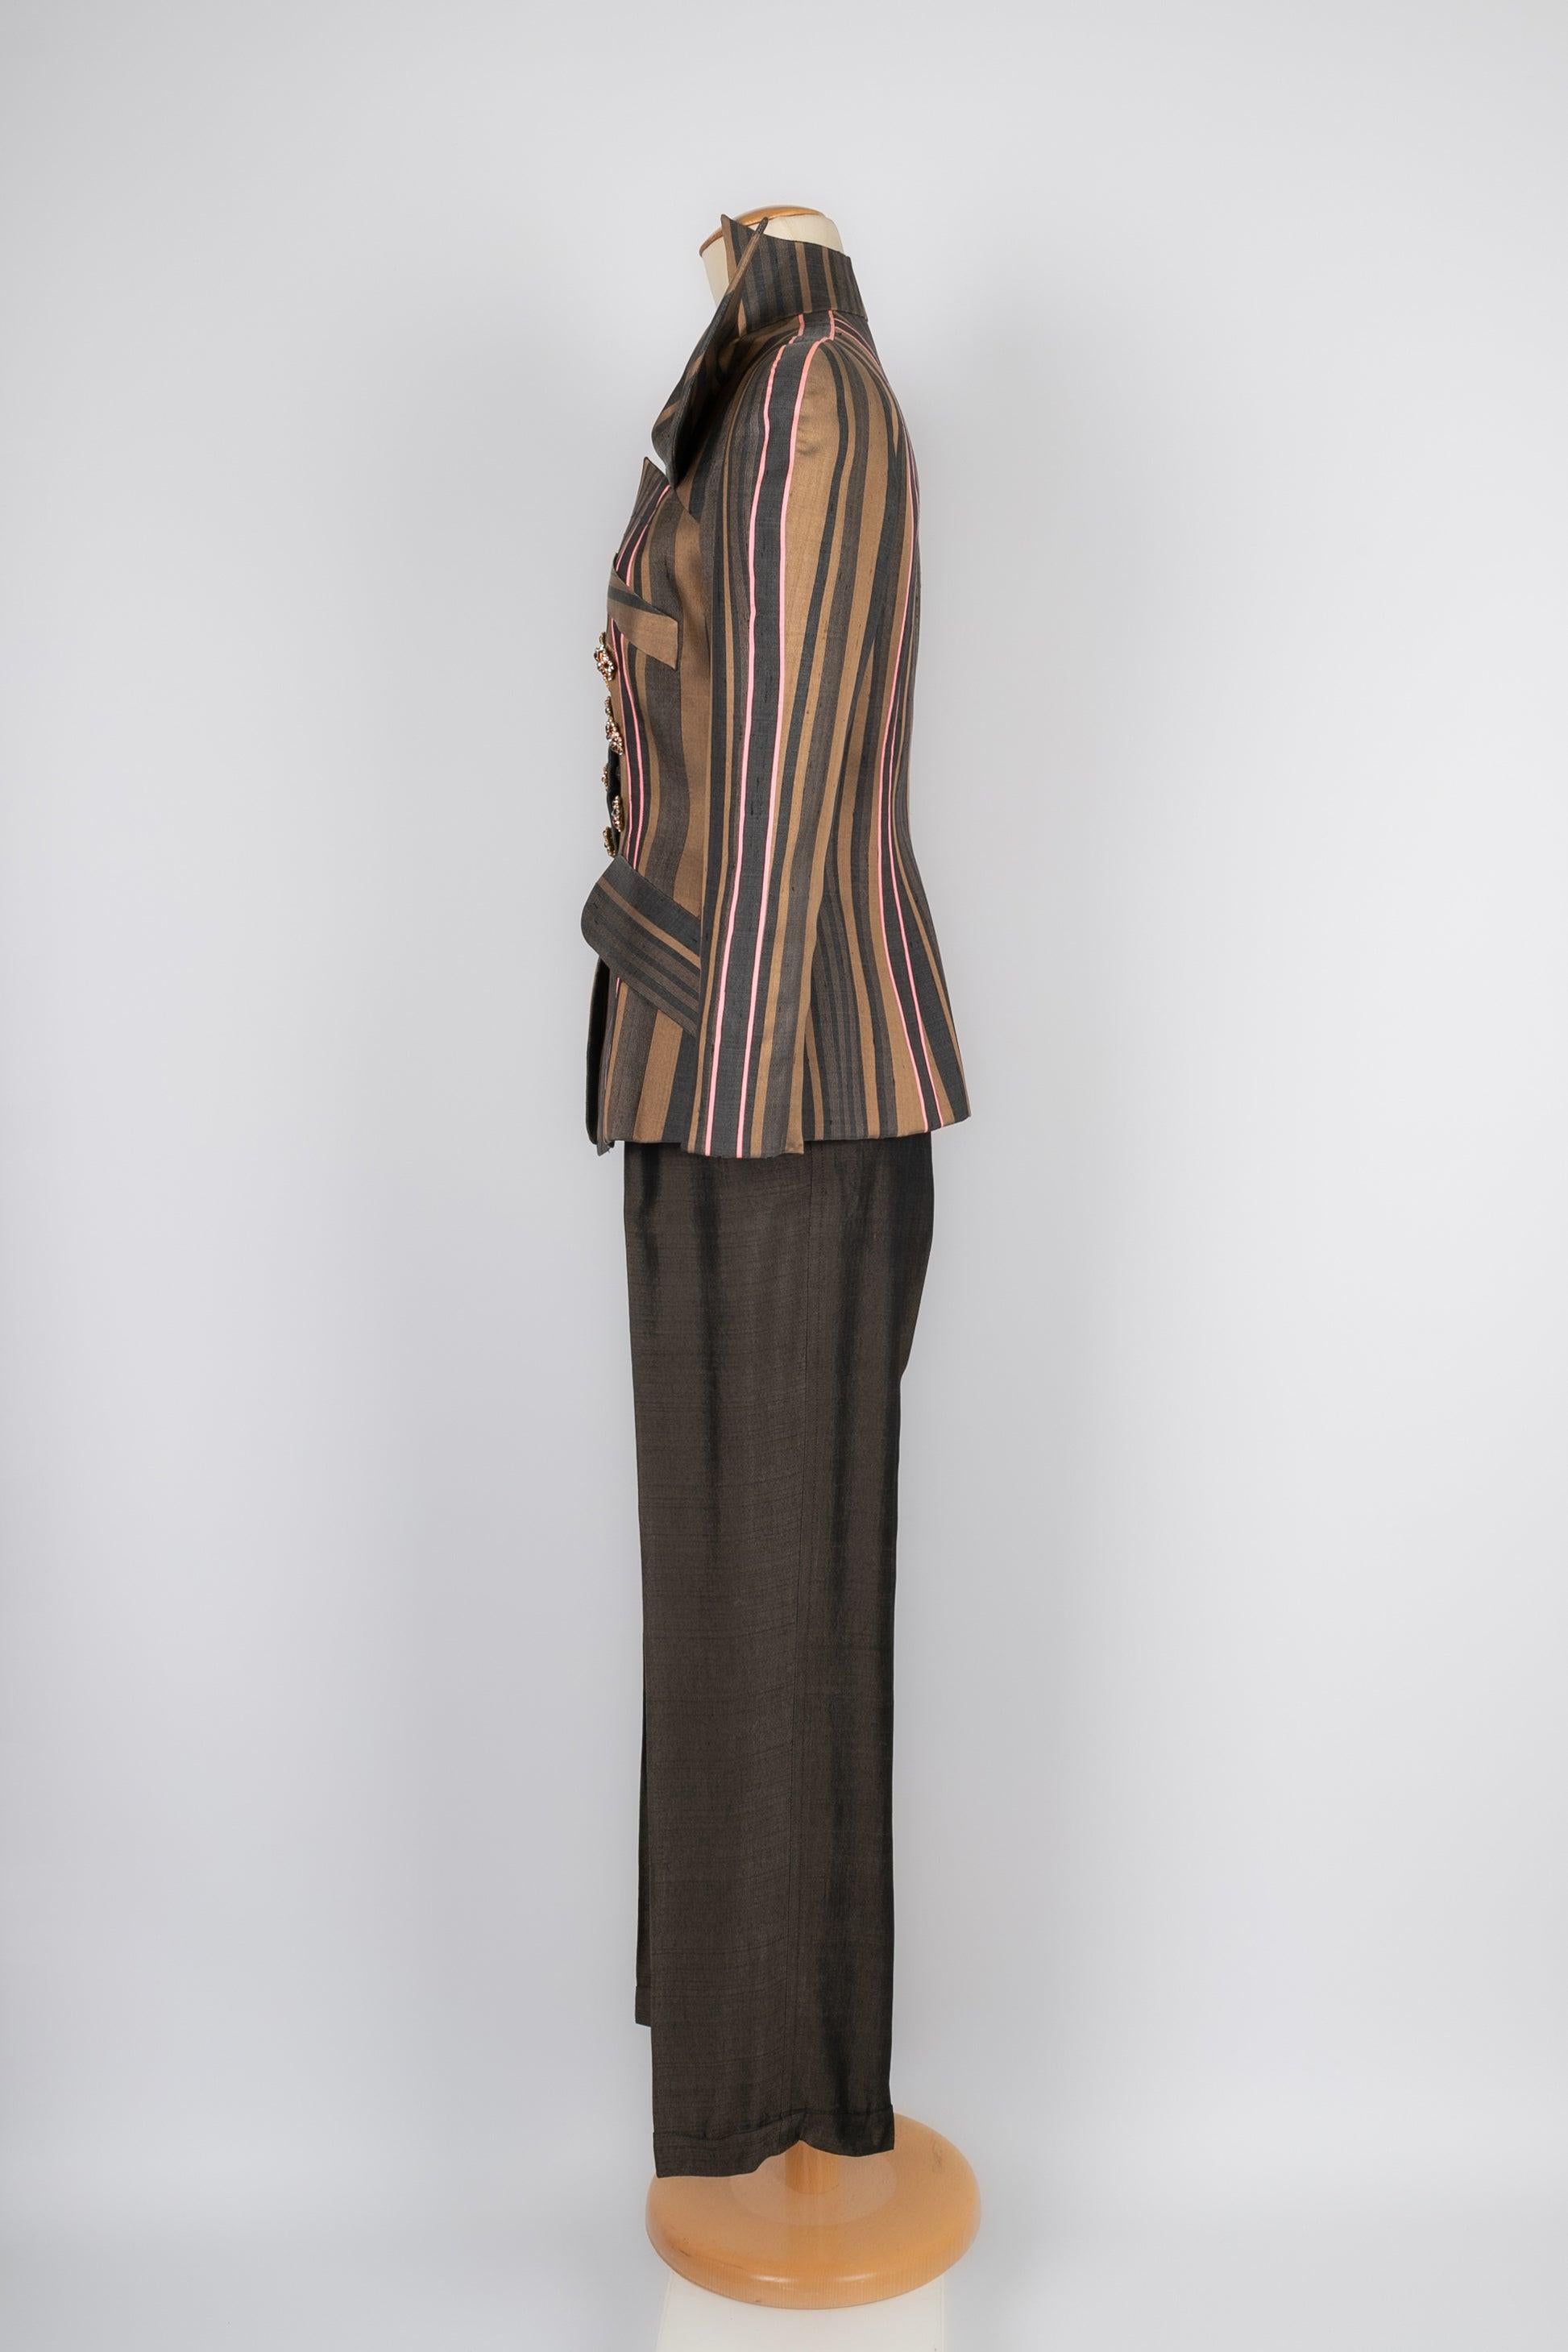 Christian Lacroix - Haute Couture bestehend aus einer Hose und einer taillierten Jacke, die mit goldenen Metallknöpfen mit Strasssteinen verziert ist. Keine Größenangabe, es passt eine 36FR. Zu erwähnen ist, dass nur sehr wenige Fäden herausgezogen